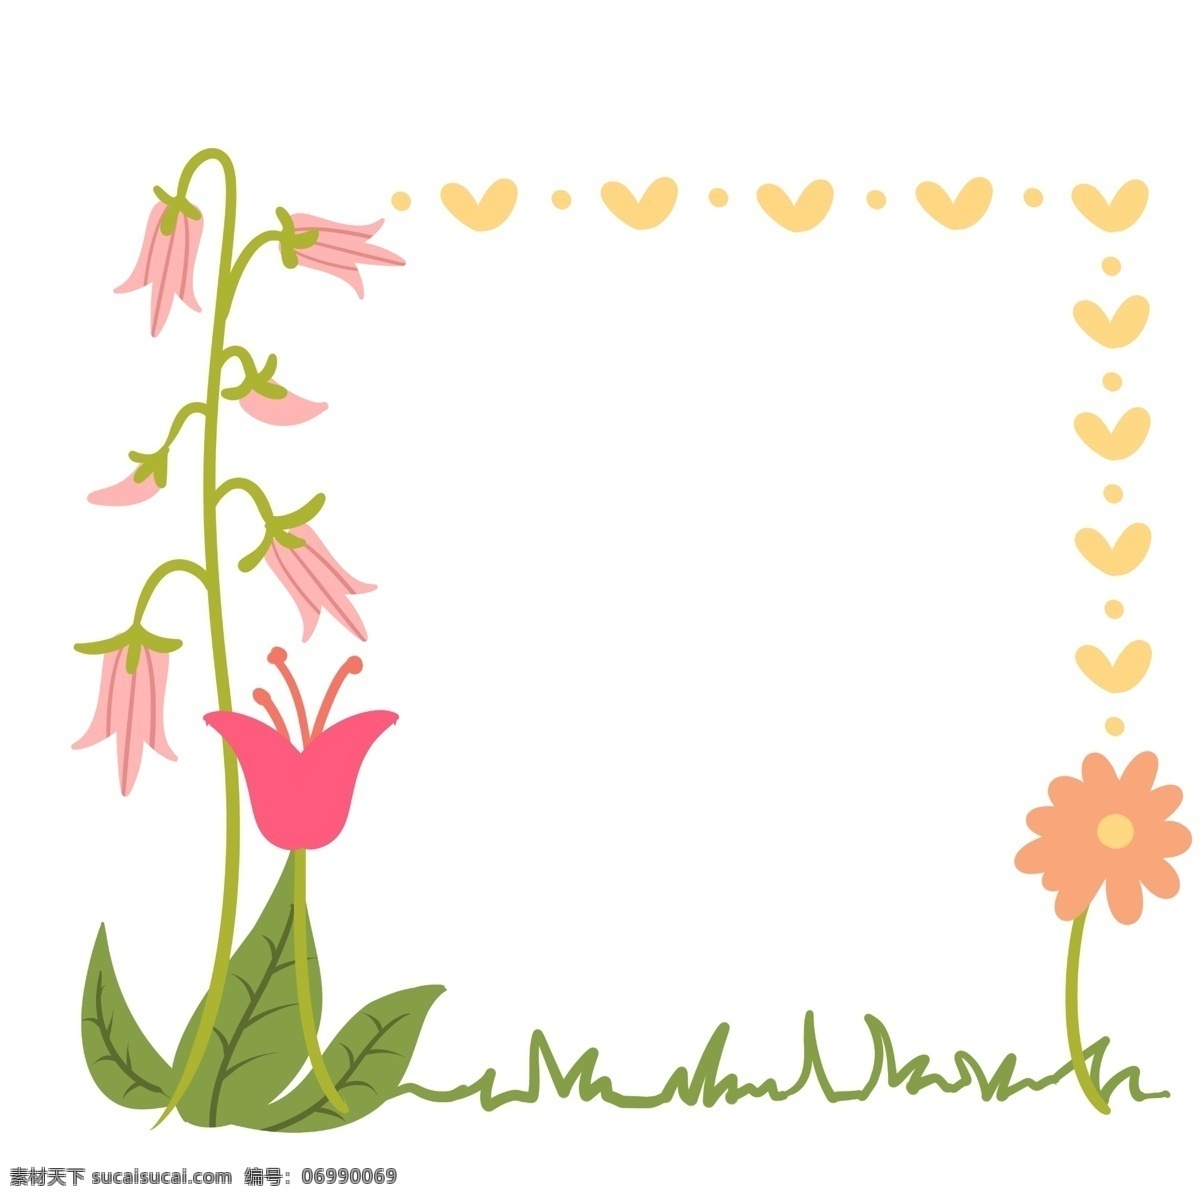 粉色 鲜花 花朵 边框 粉色的花朵 卡通边框 小物边框 漂亮的边框 美丽的边框 创意边框 花朵的边框